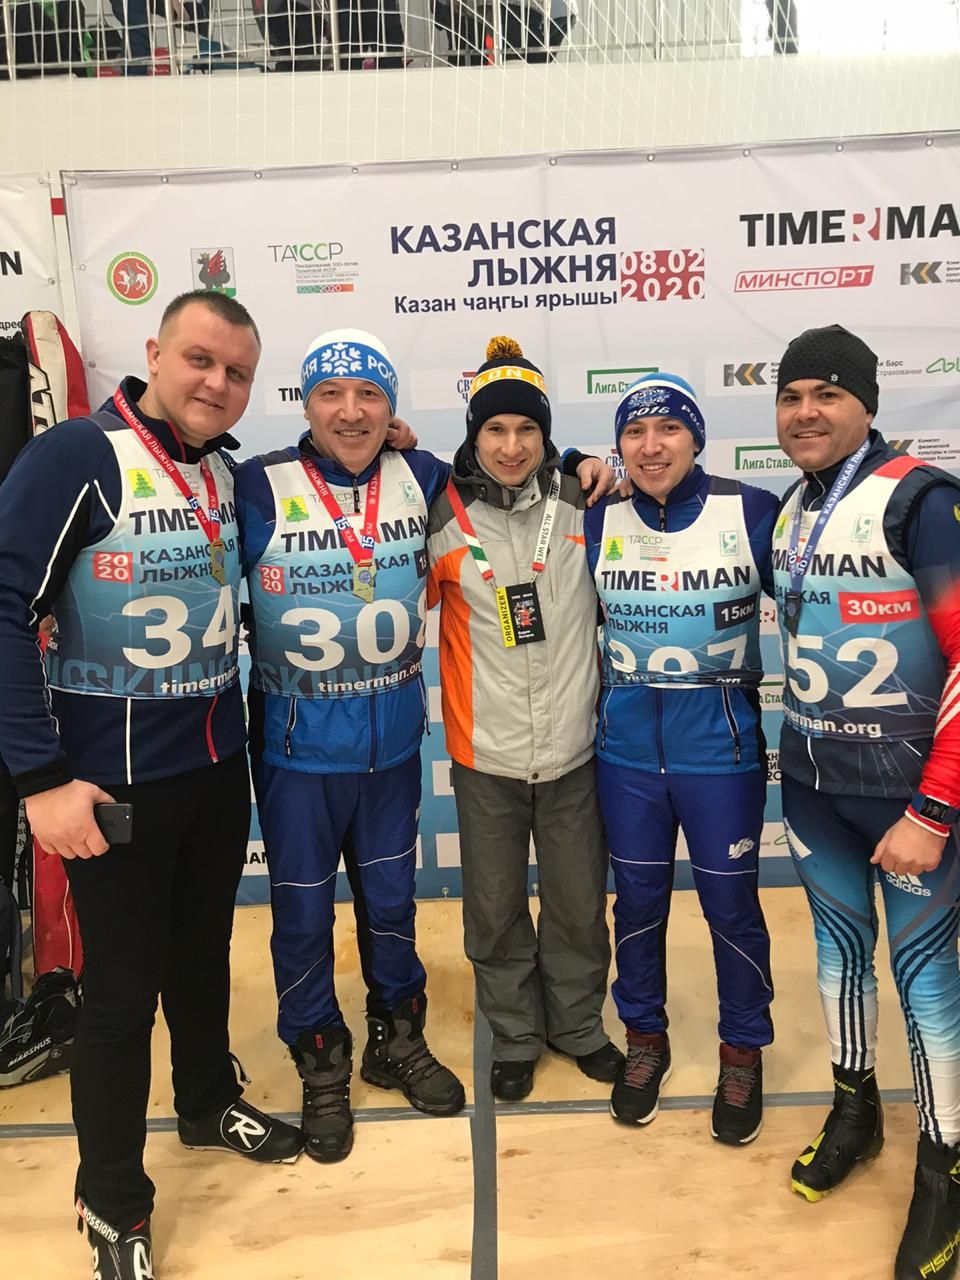 Зеленодольцы в сегодняшней лыжной гонке TIMERMAN в Казани